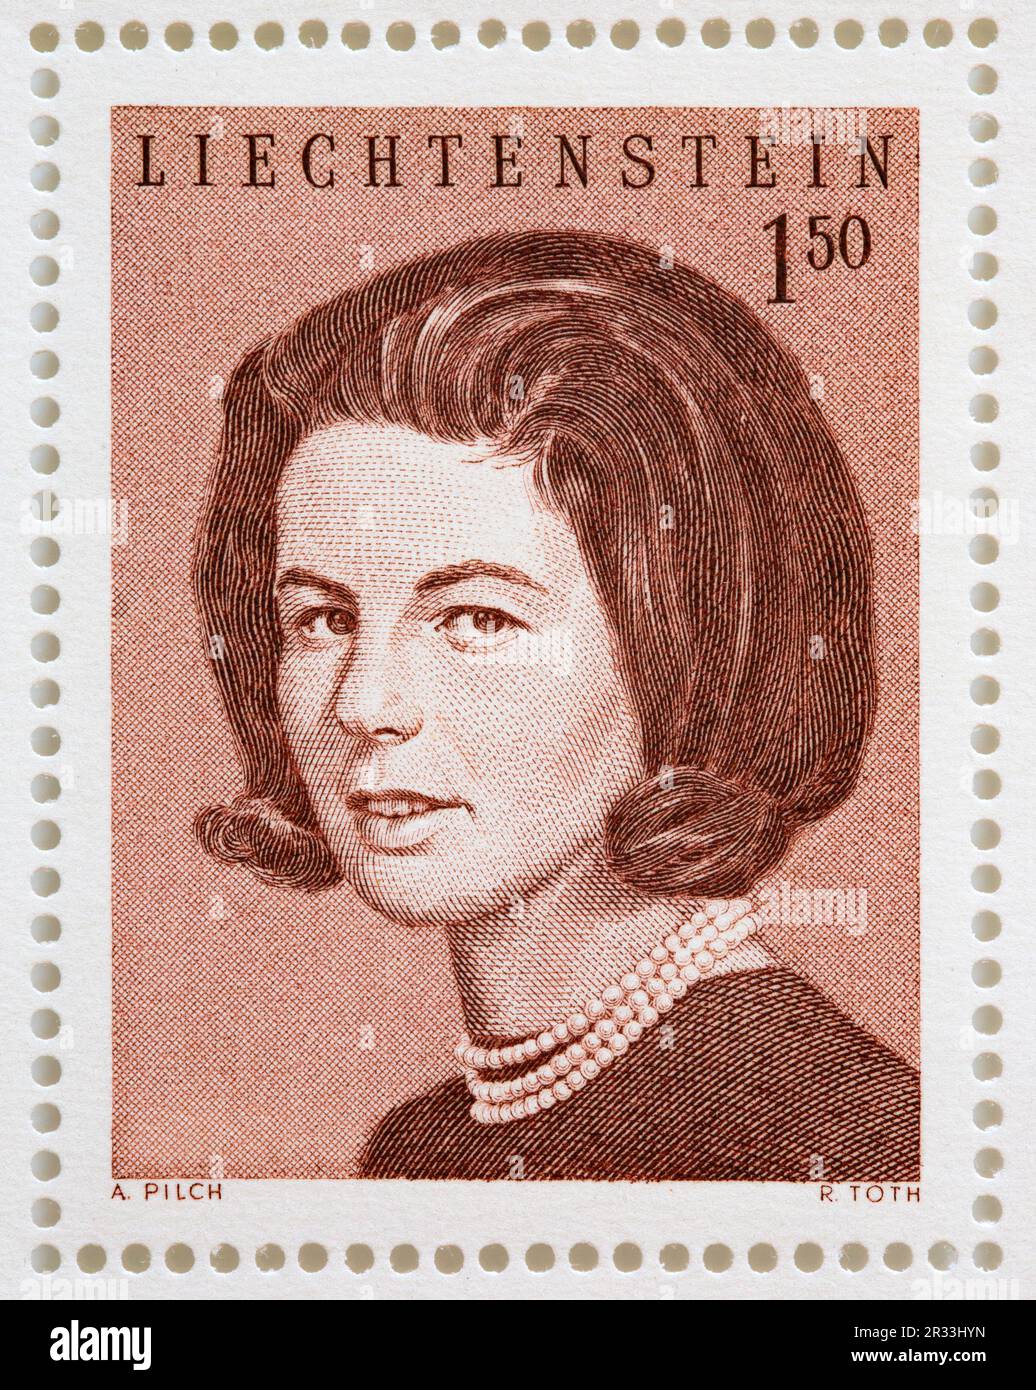 Ritratto inciso della contessa Marie Kinsky di Wchinitz e tettau (Principessa del Liechtenstein) su un francobollo del 1967 che commemora il suo matrimonio. Foto Stock